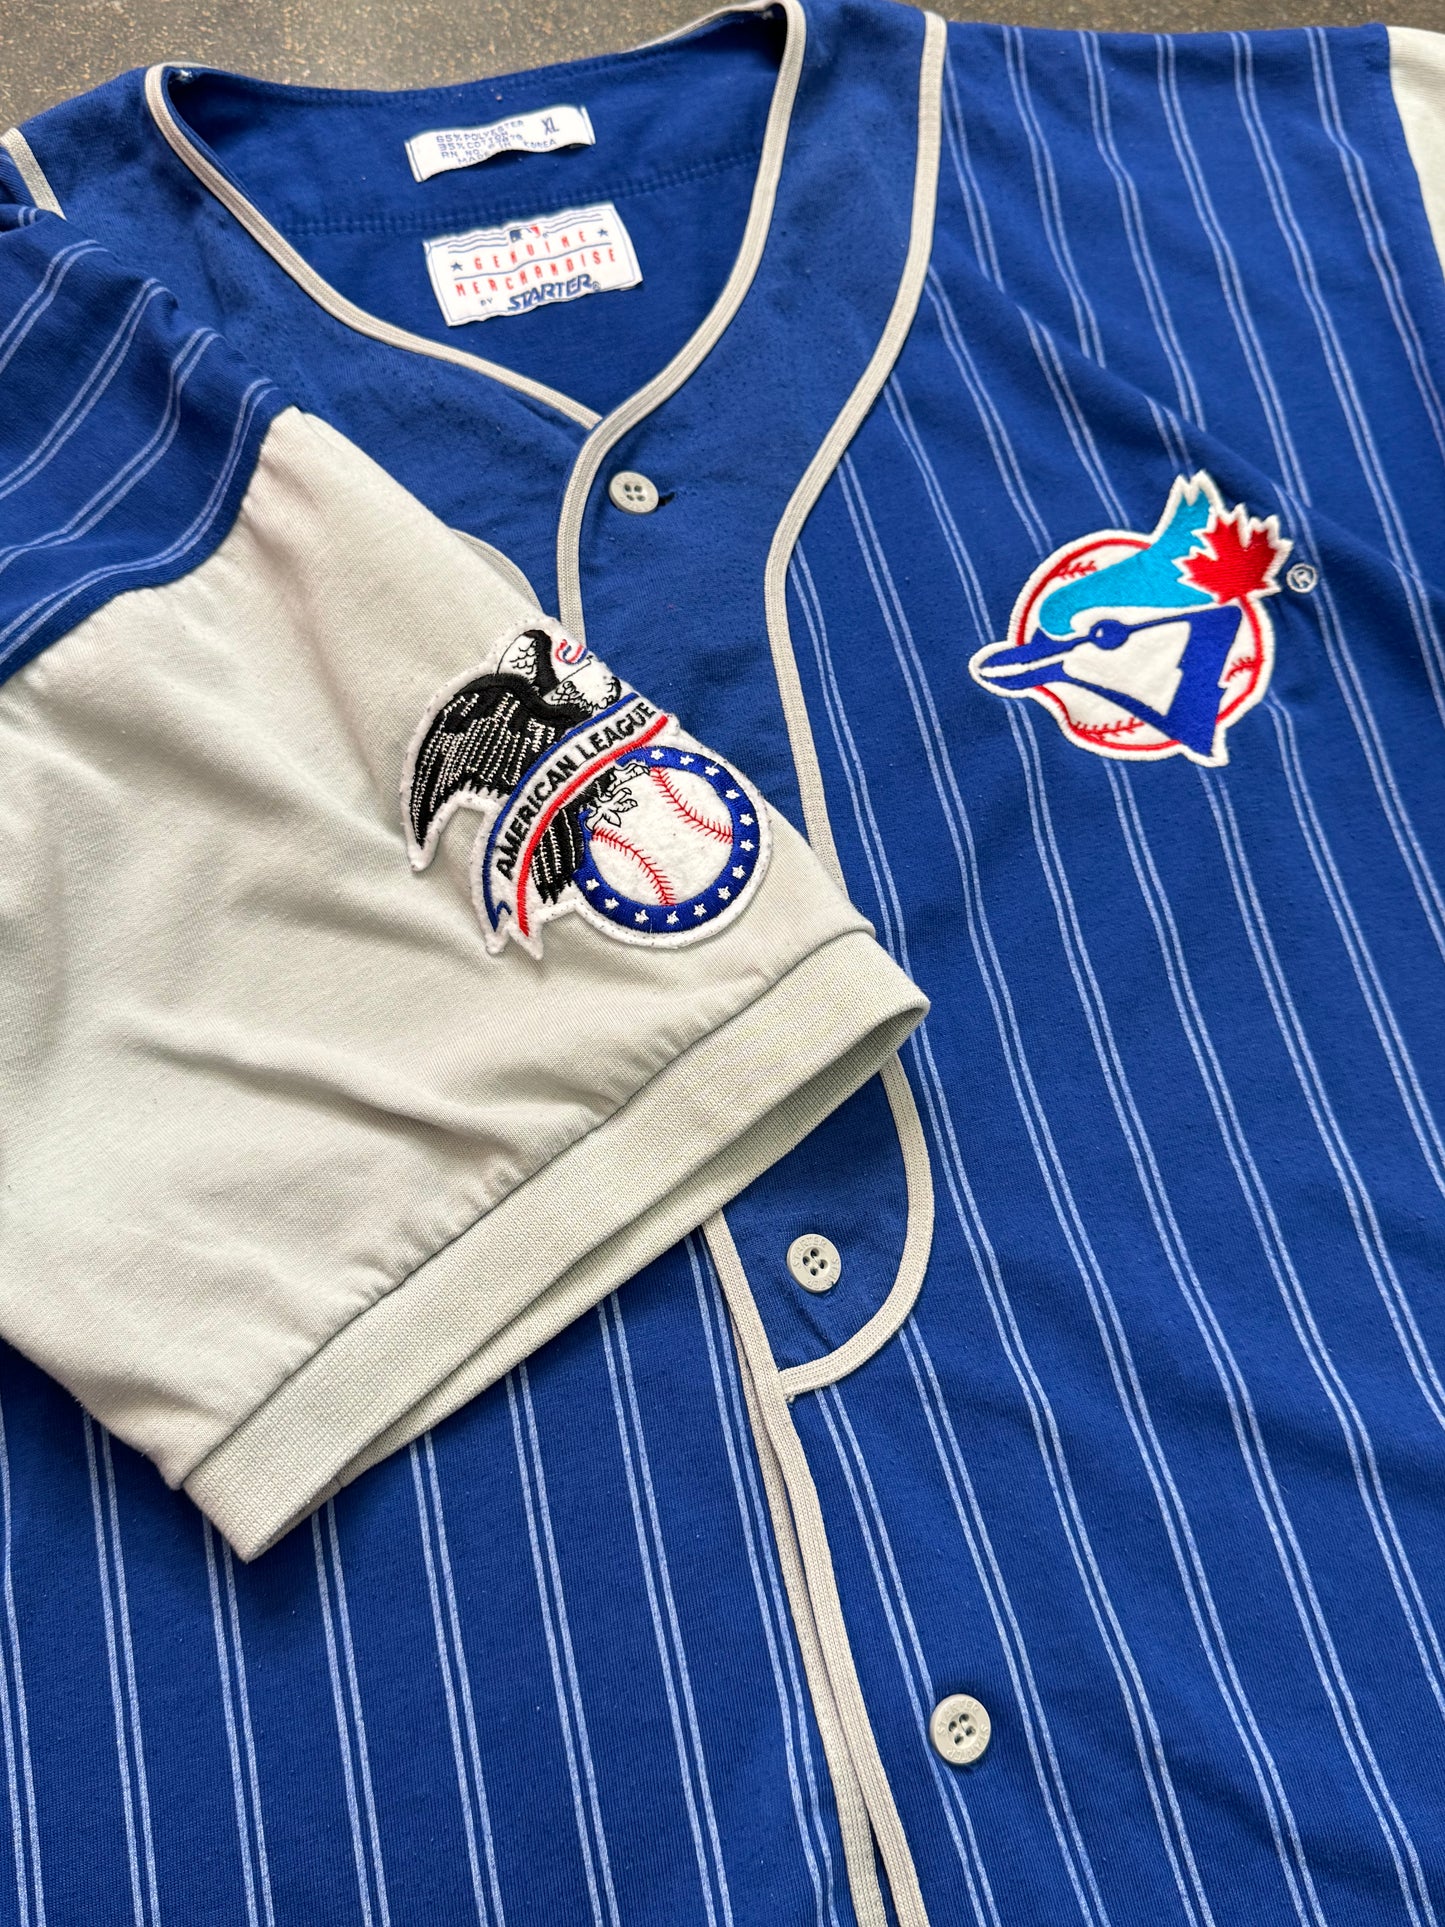 Vintage Toronto Blue Jays Starter Striped Jersey Size XL